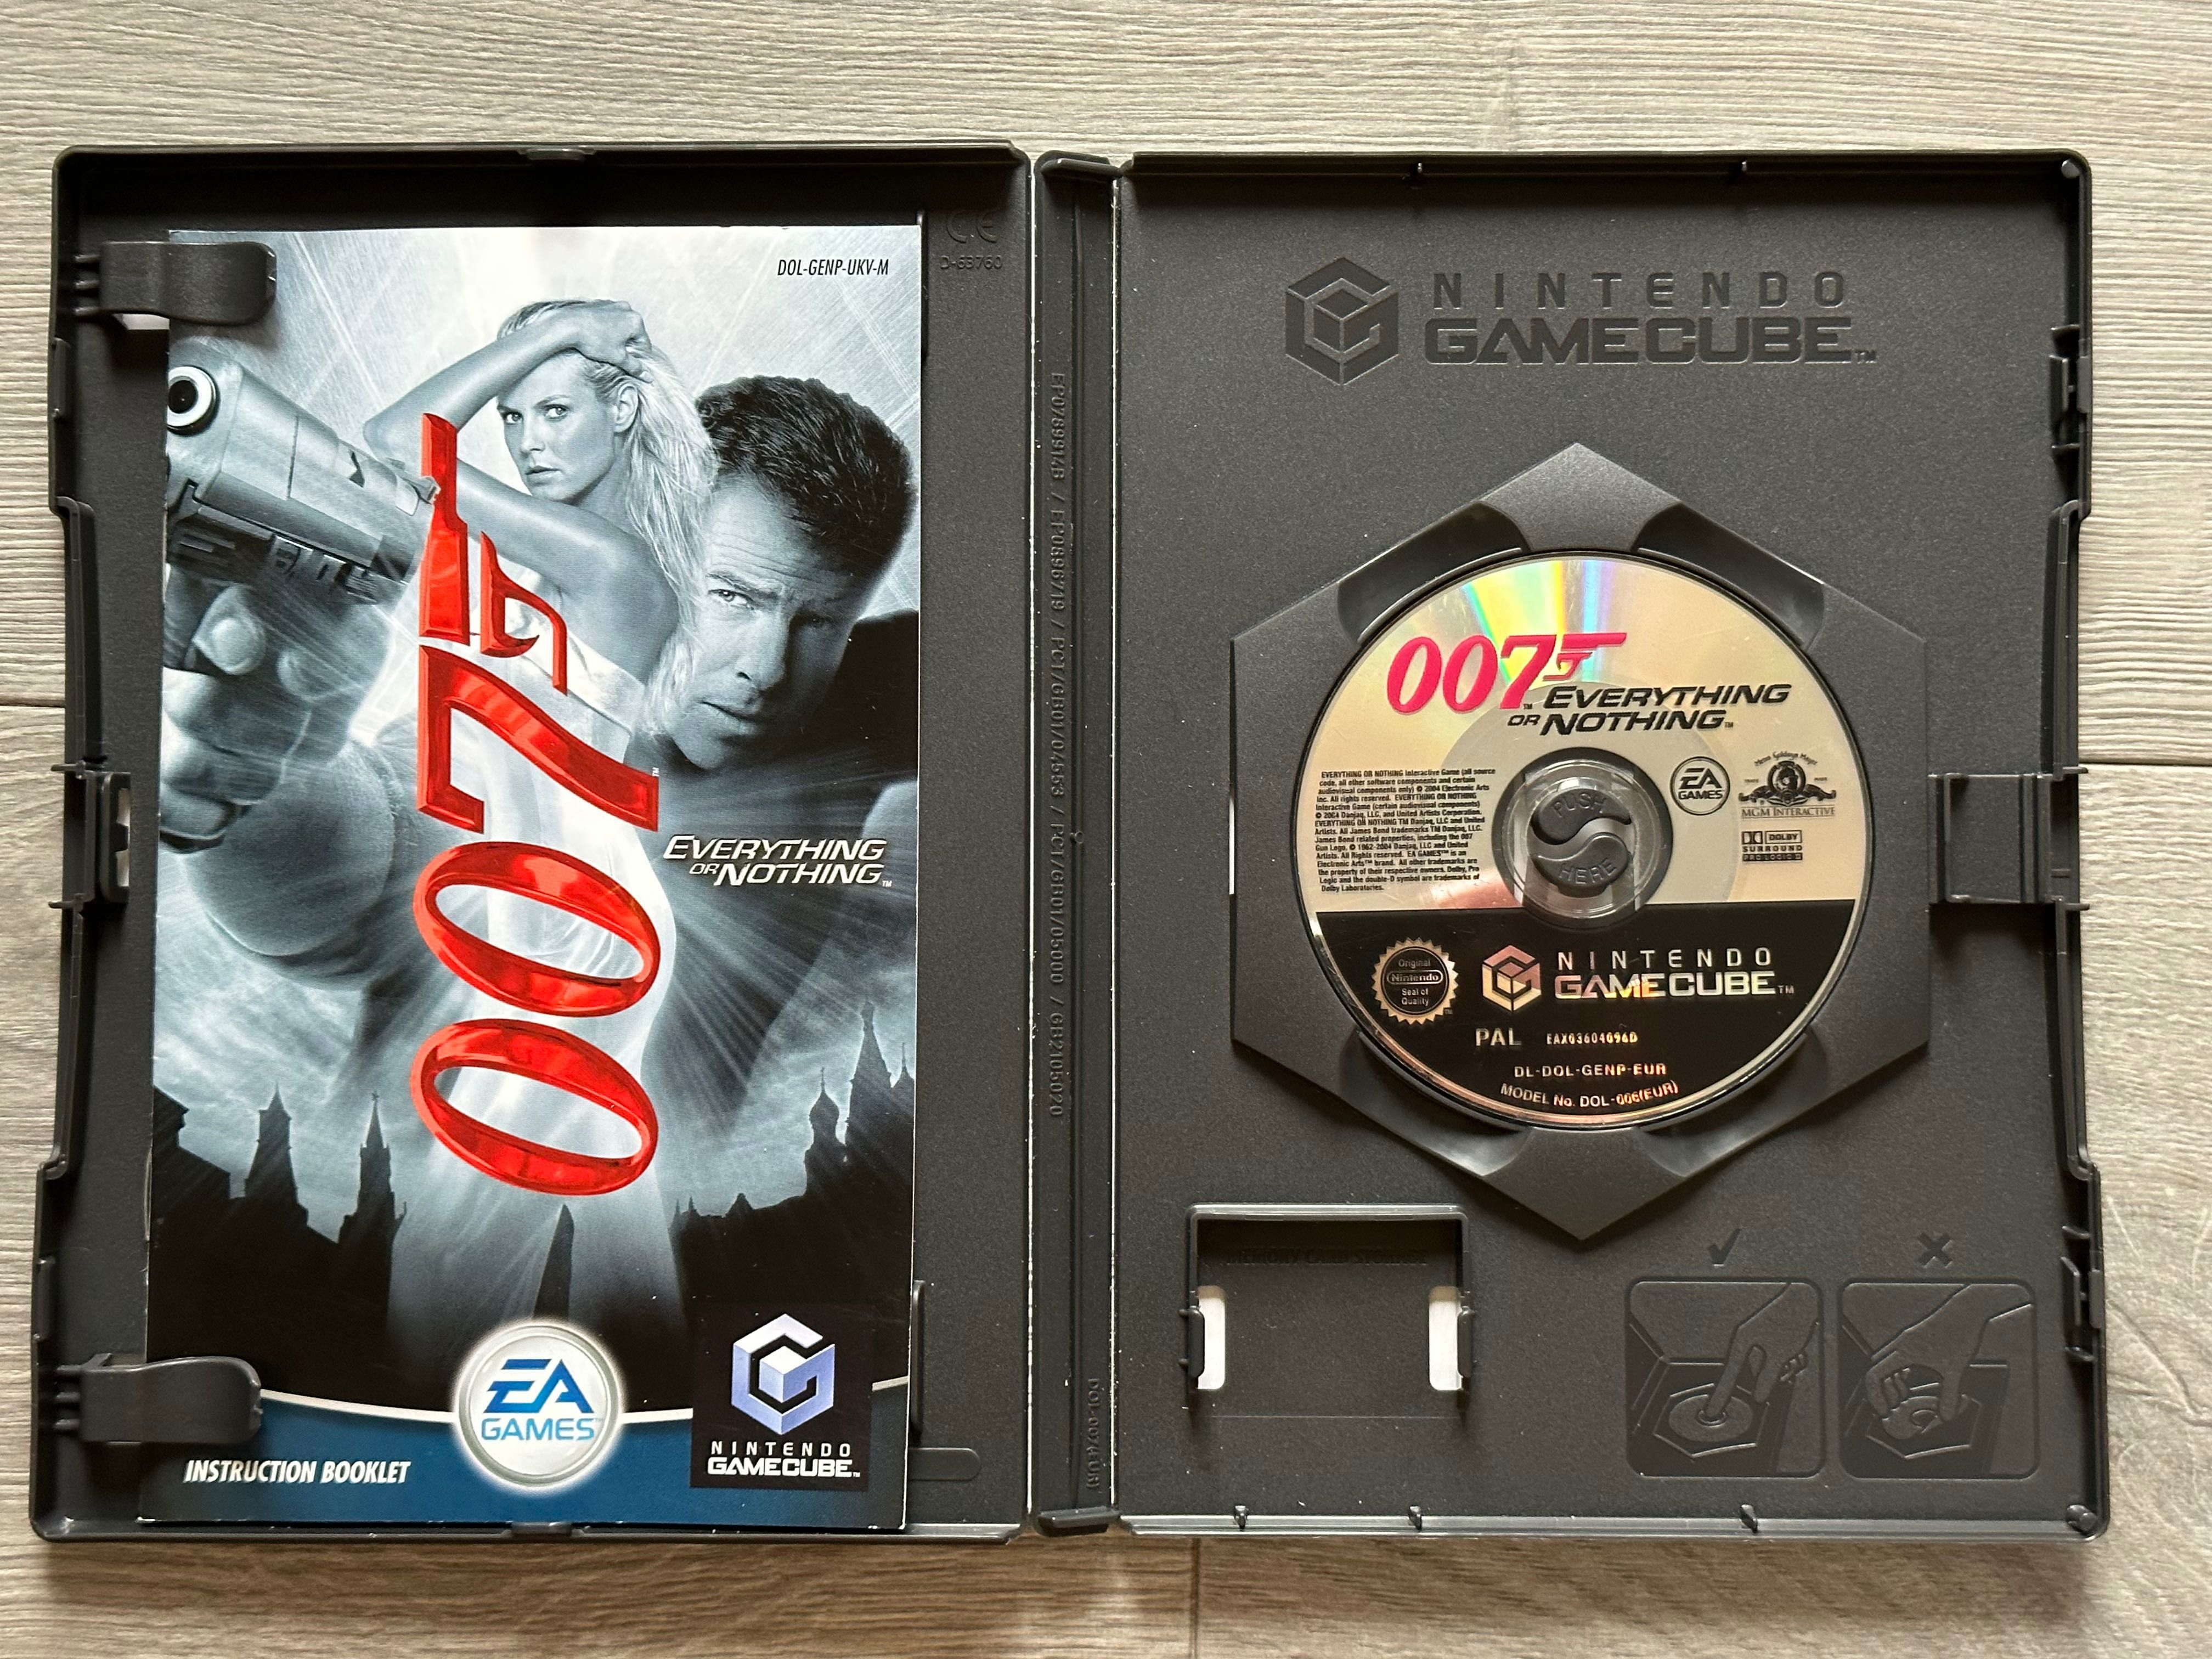 James Bond 007: Everything or Nothing / GameCube